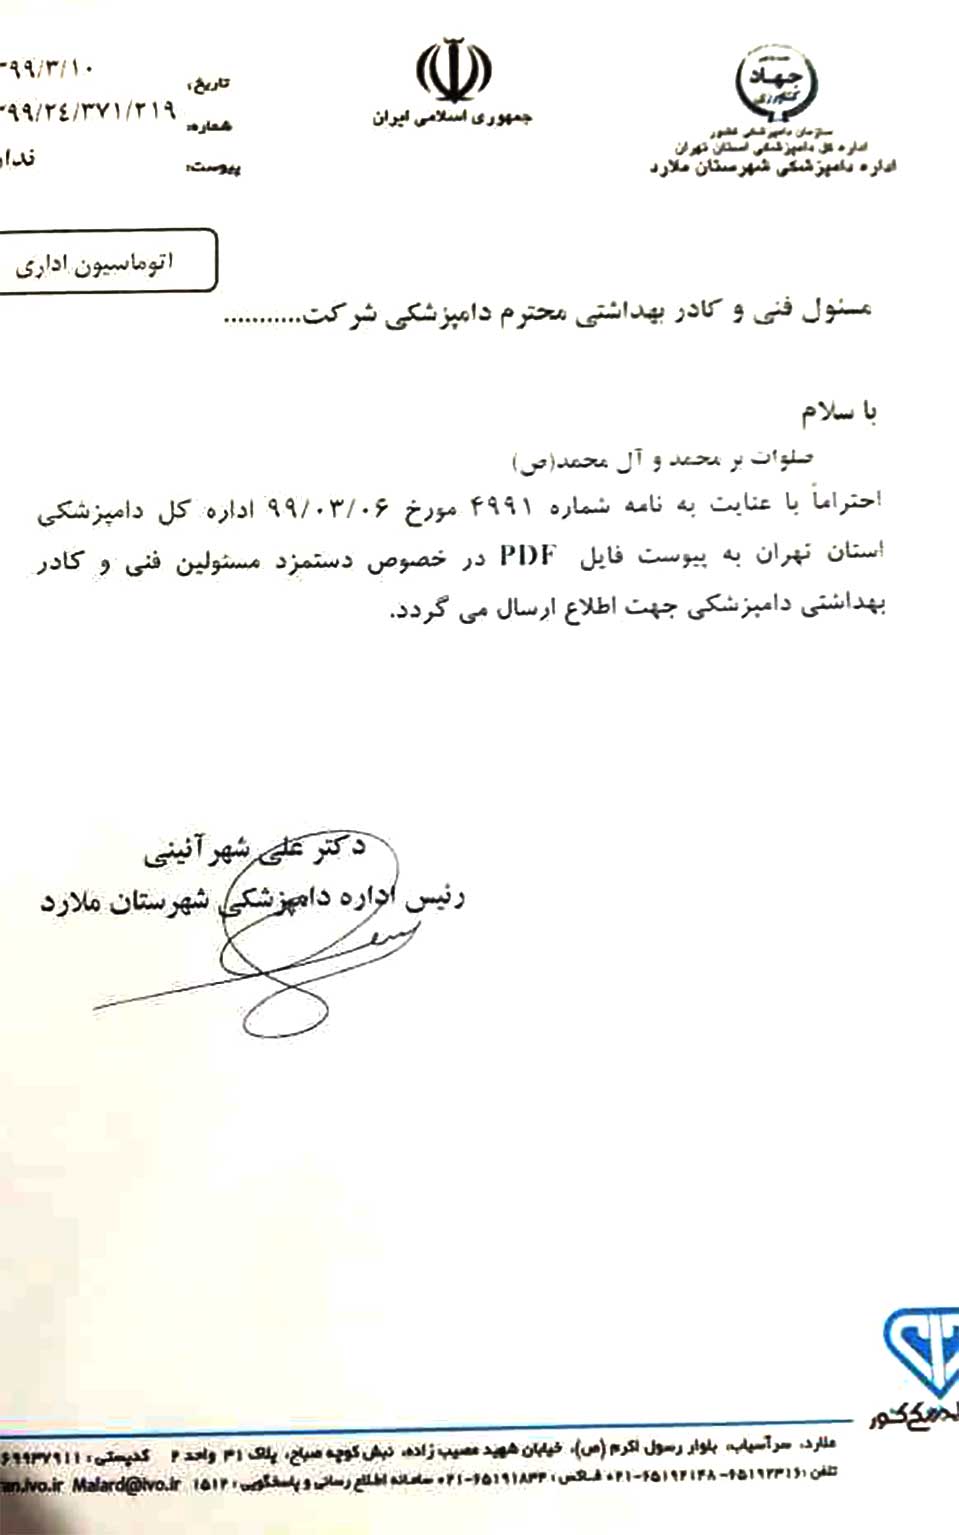 اداره کل و نظام دامپزشکی استان تهران حداقل حقوق مسئولین فنی و دستیاران بهداشتی در سال 99 را ابلاغ کرد